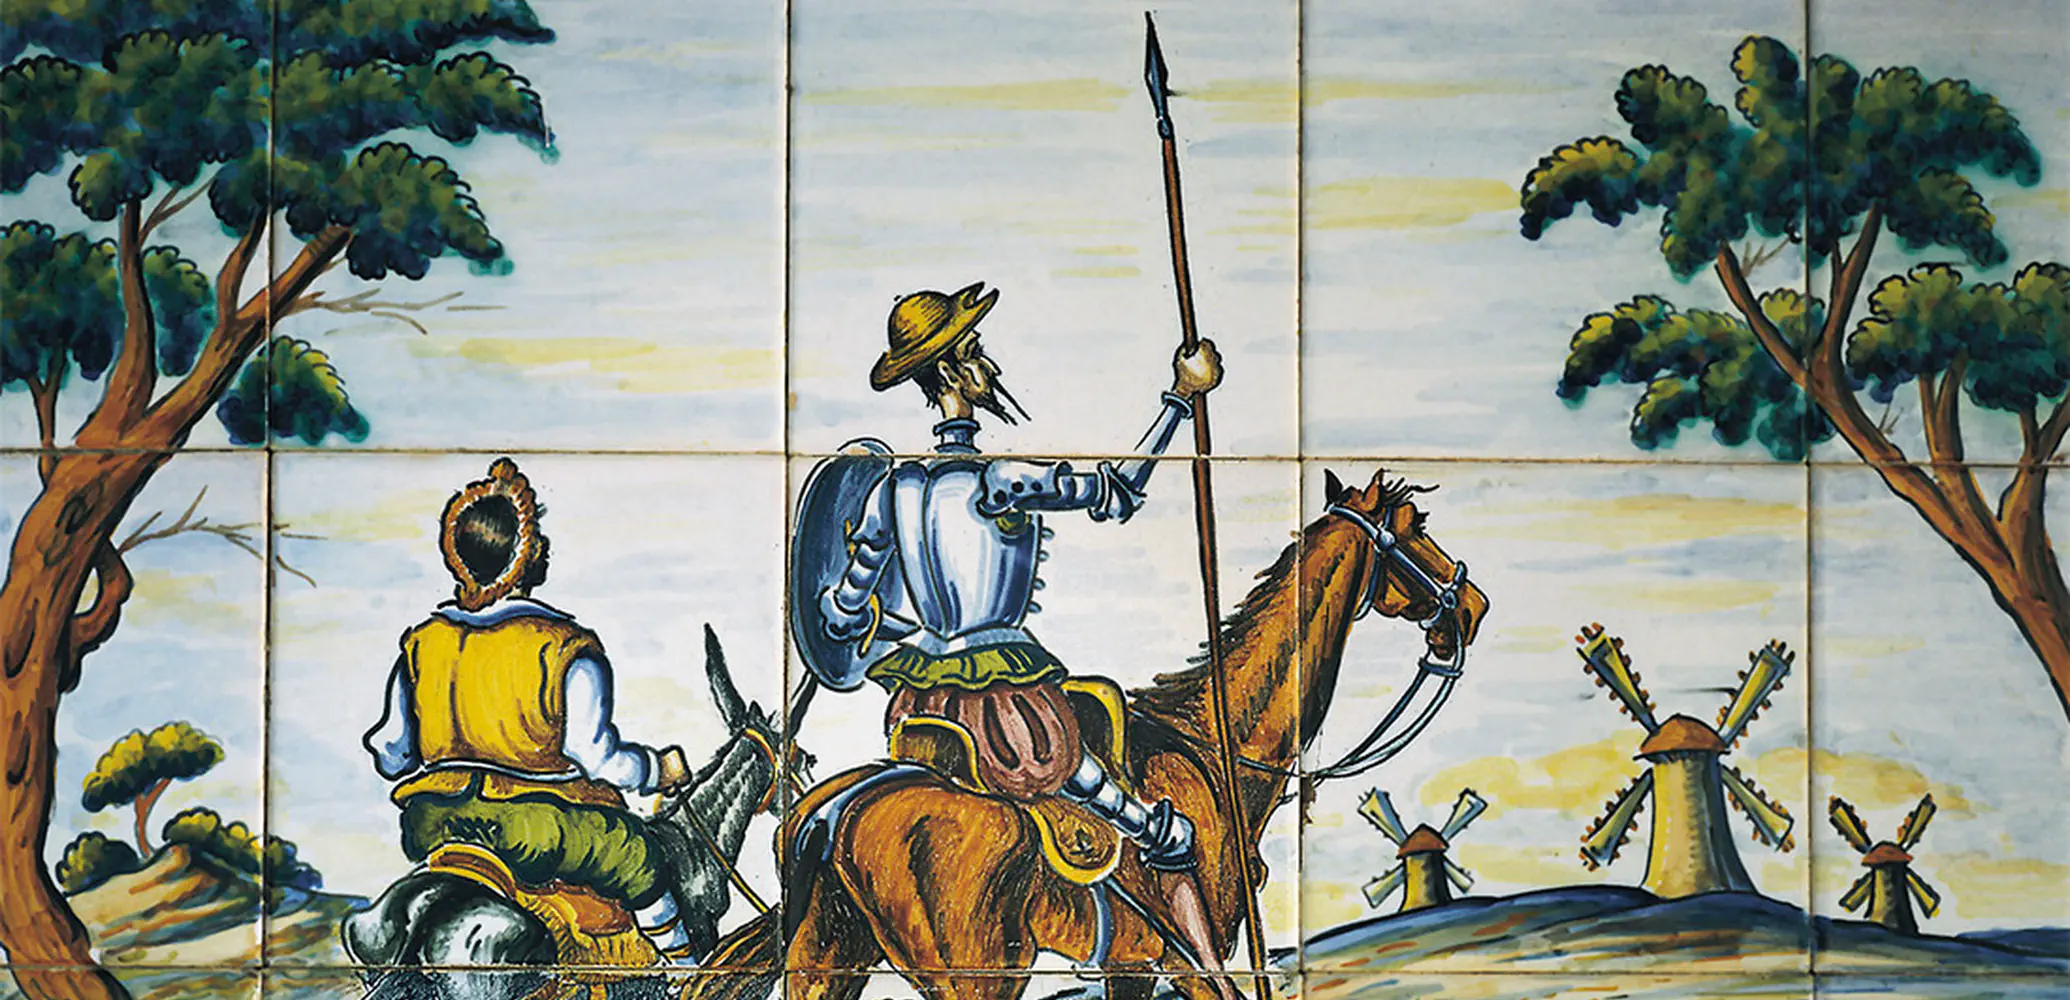 Don Quichot en Sancho Panza voor de windmolens.